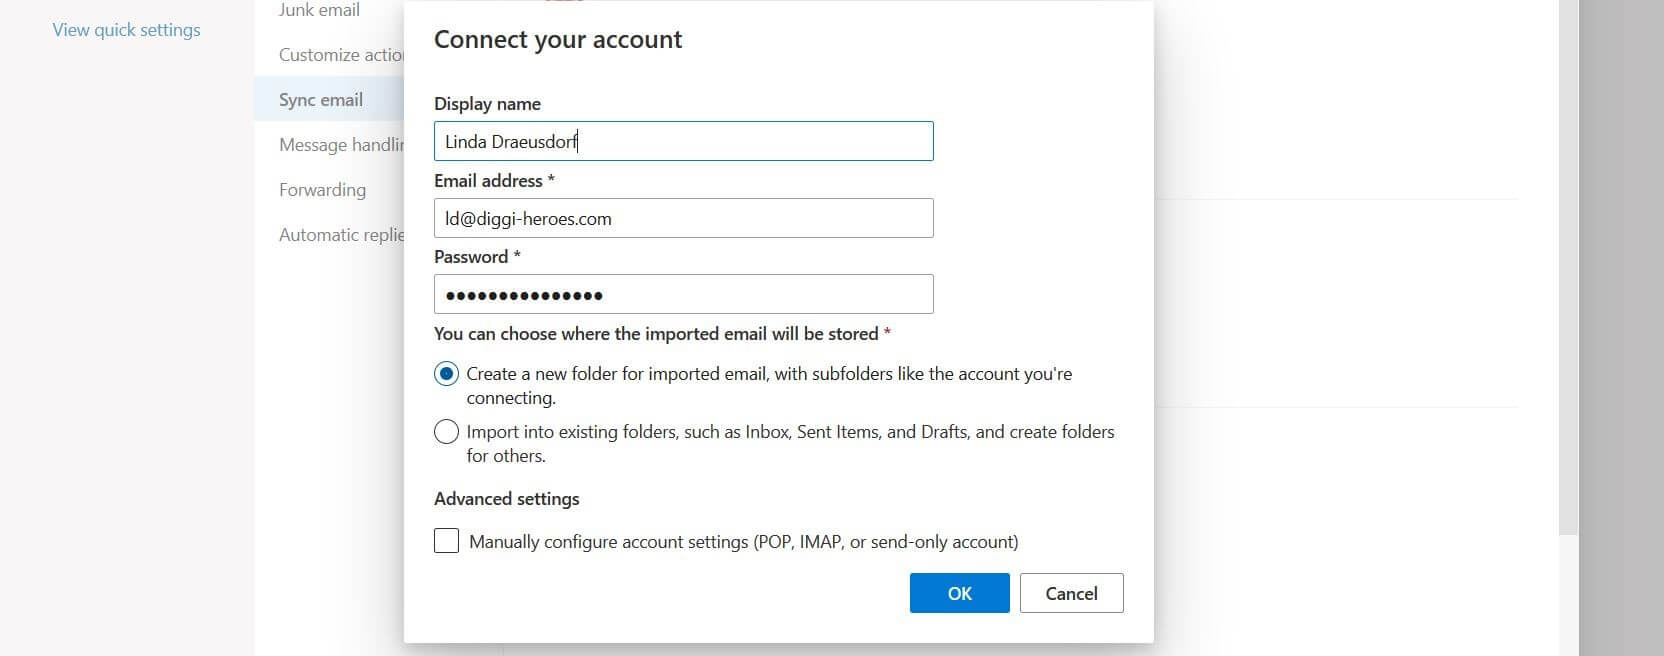 Fenêtre vers la connexion de compte dans Outlook Web